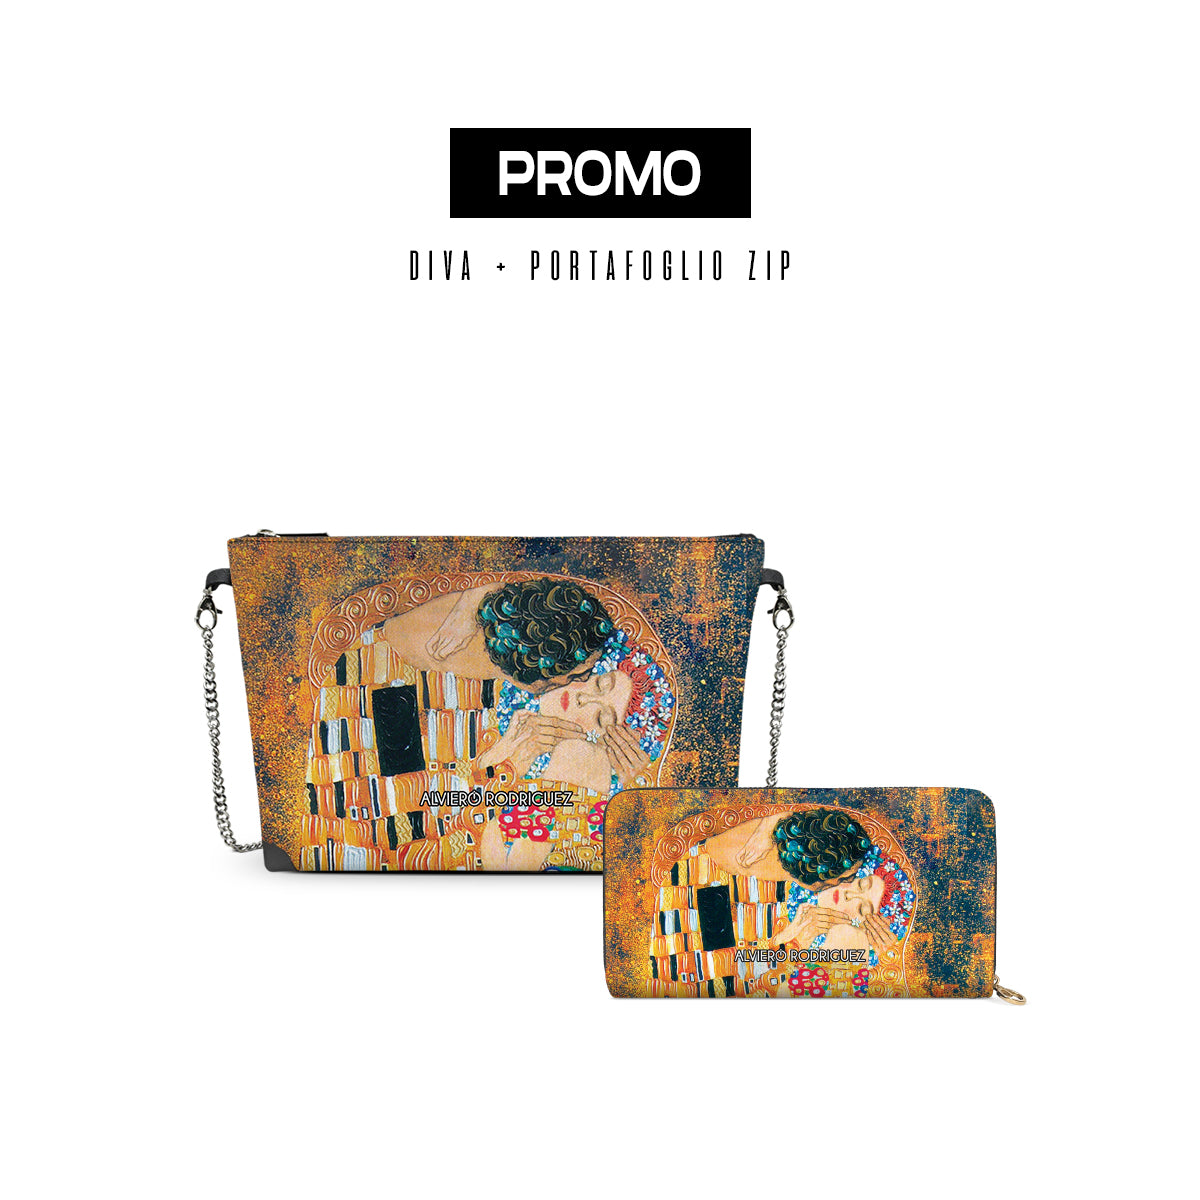 Promo diva + Portafoglio Zip Il Bacio di Klimt